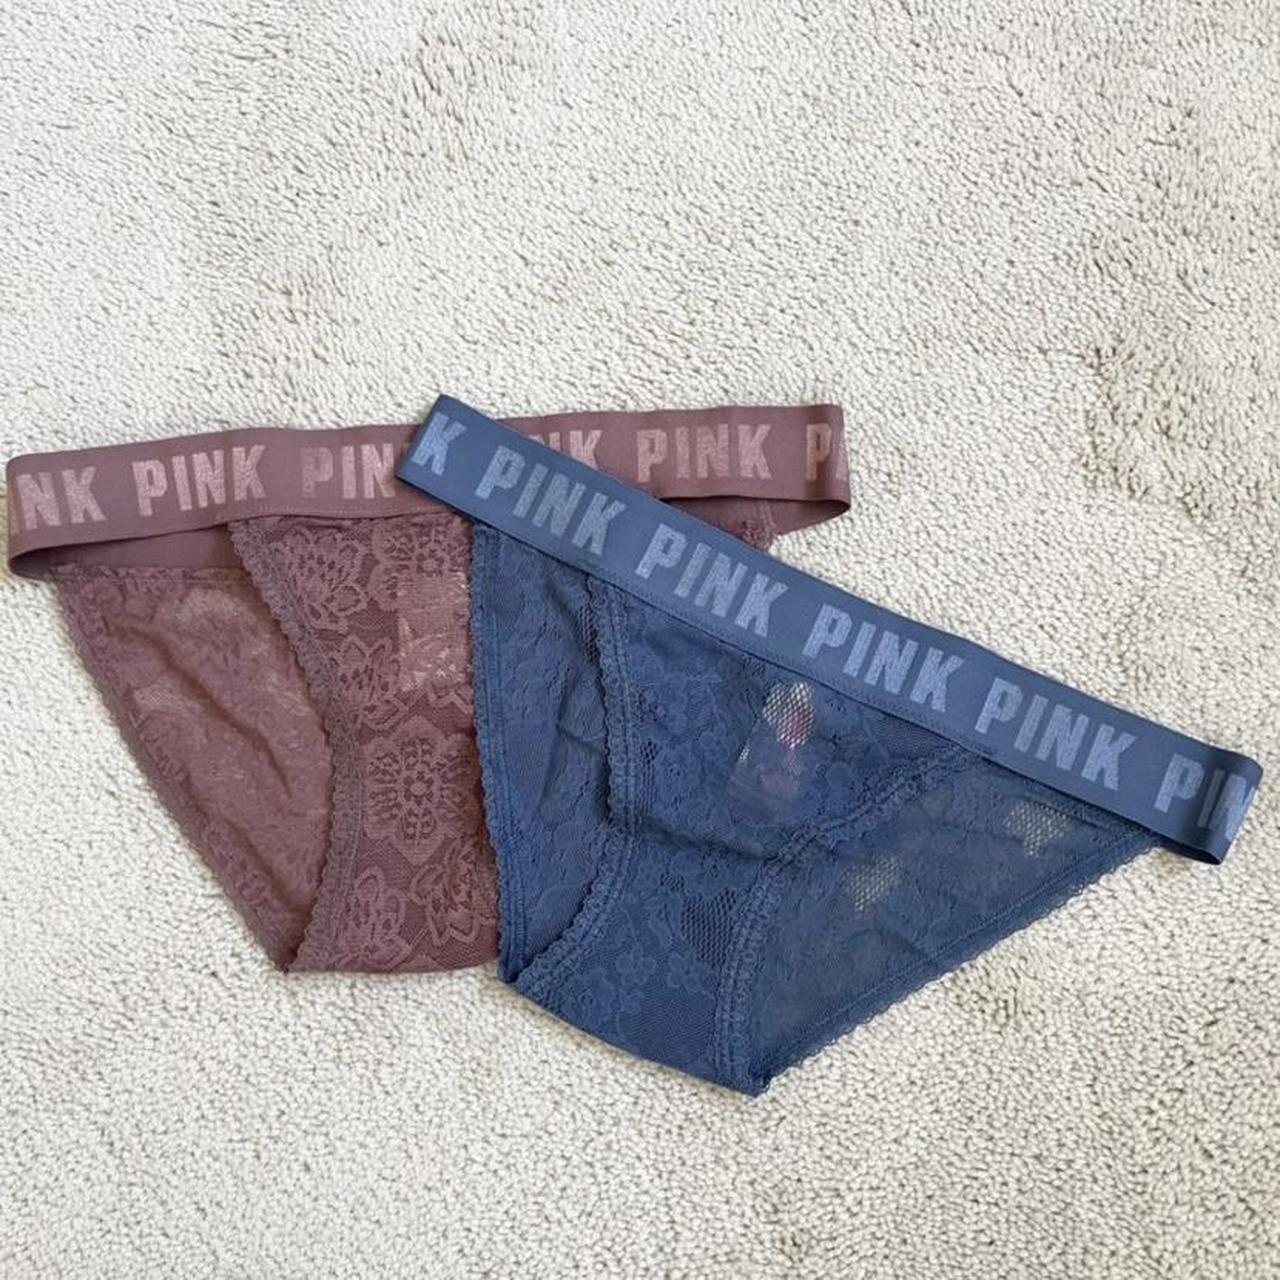 PINK brand new underwear